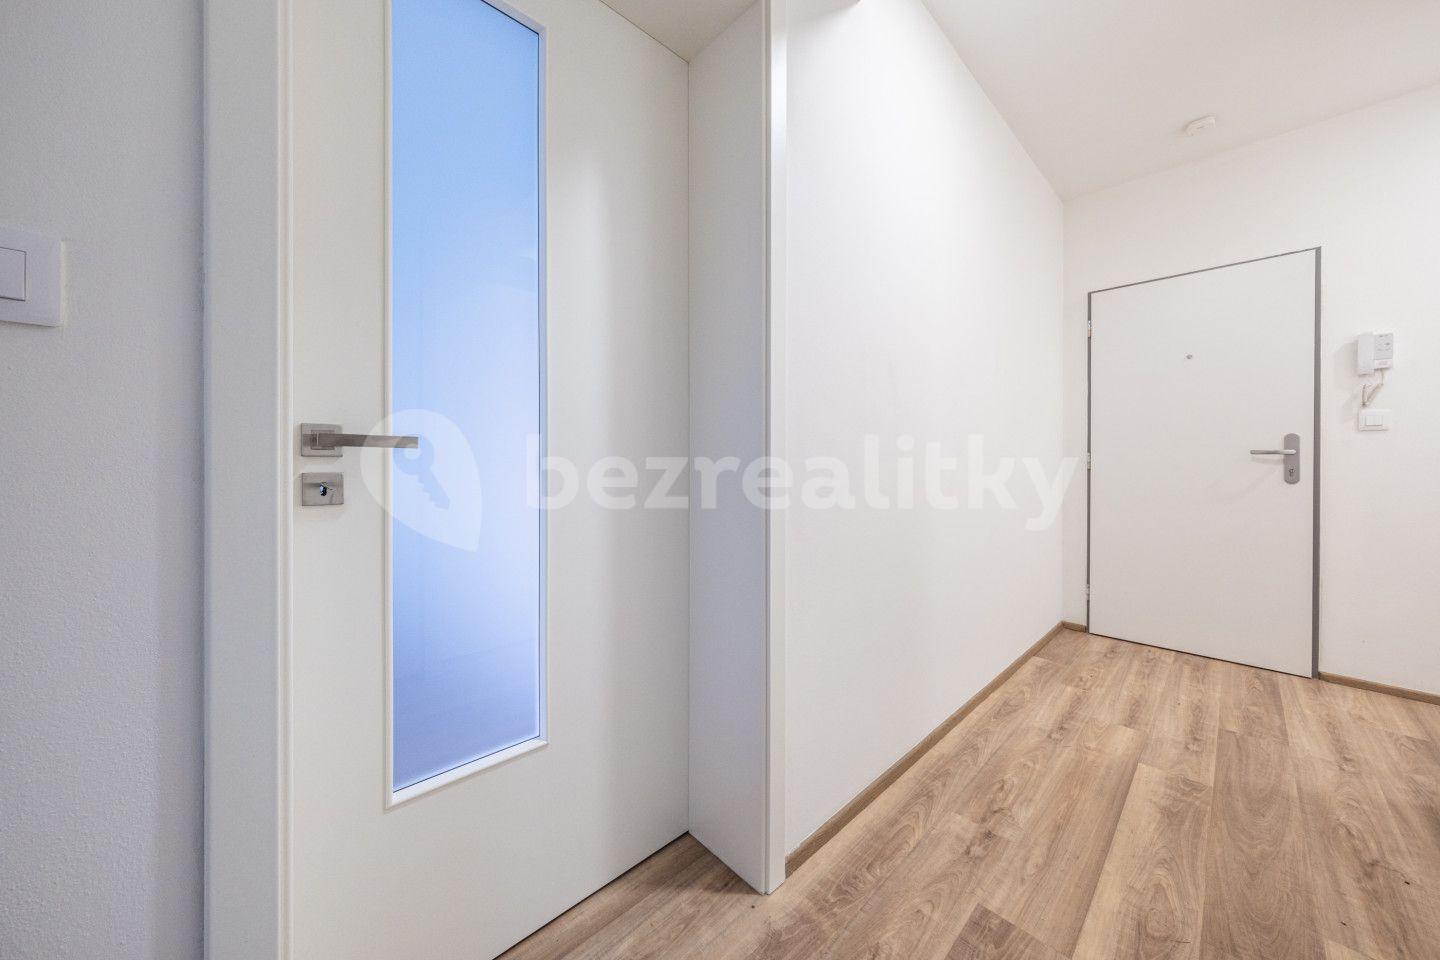 1 bedroom with open-plan kitchen flat for sale, 53 m², Verdunská, Říčany, Středočeský Region